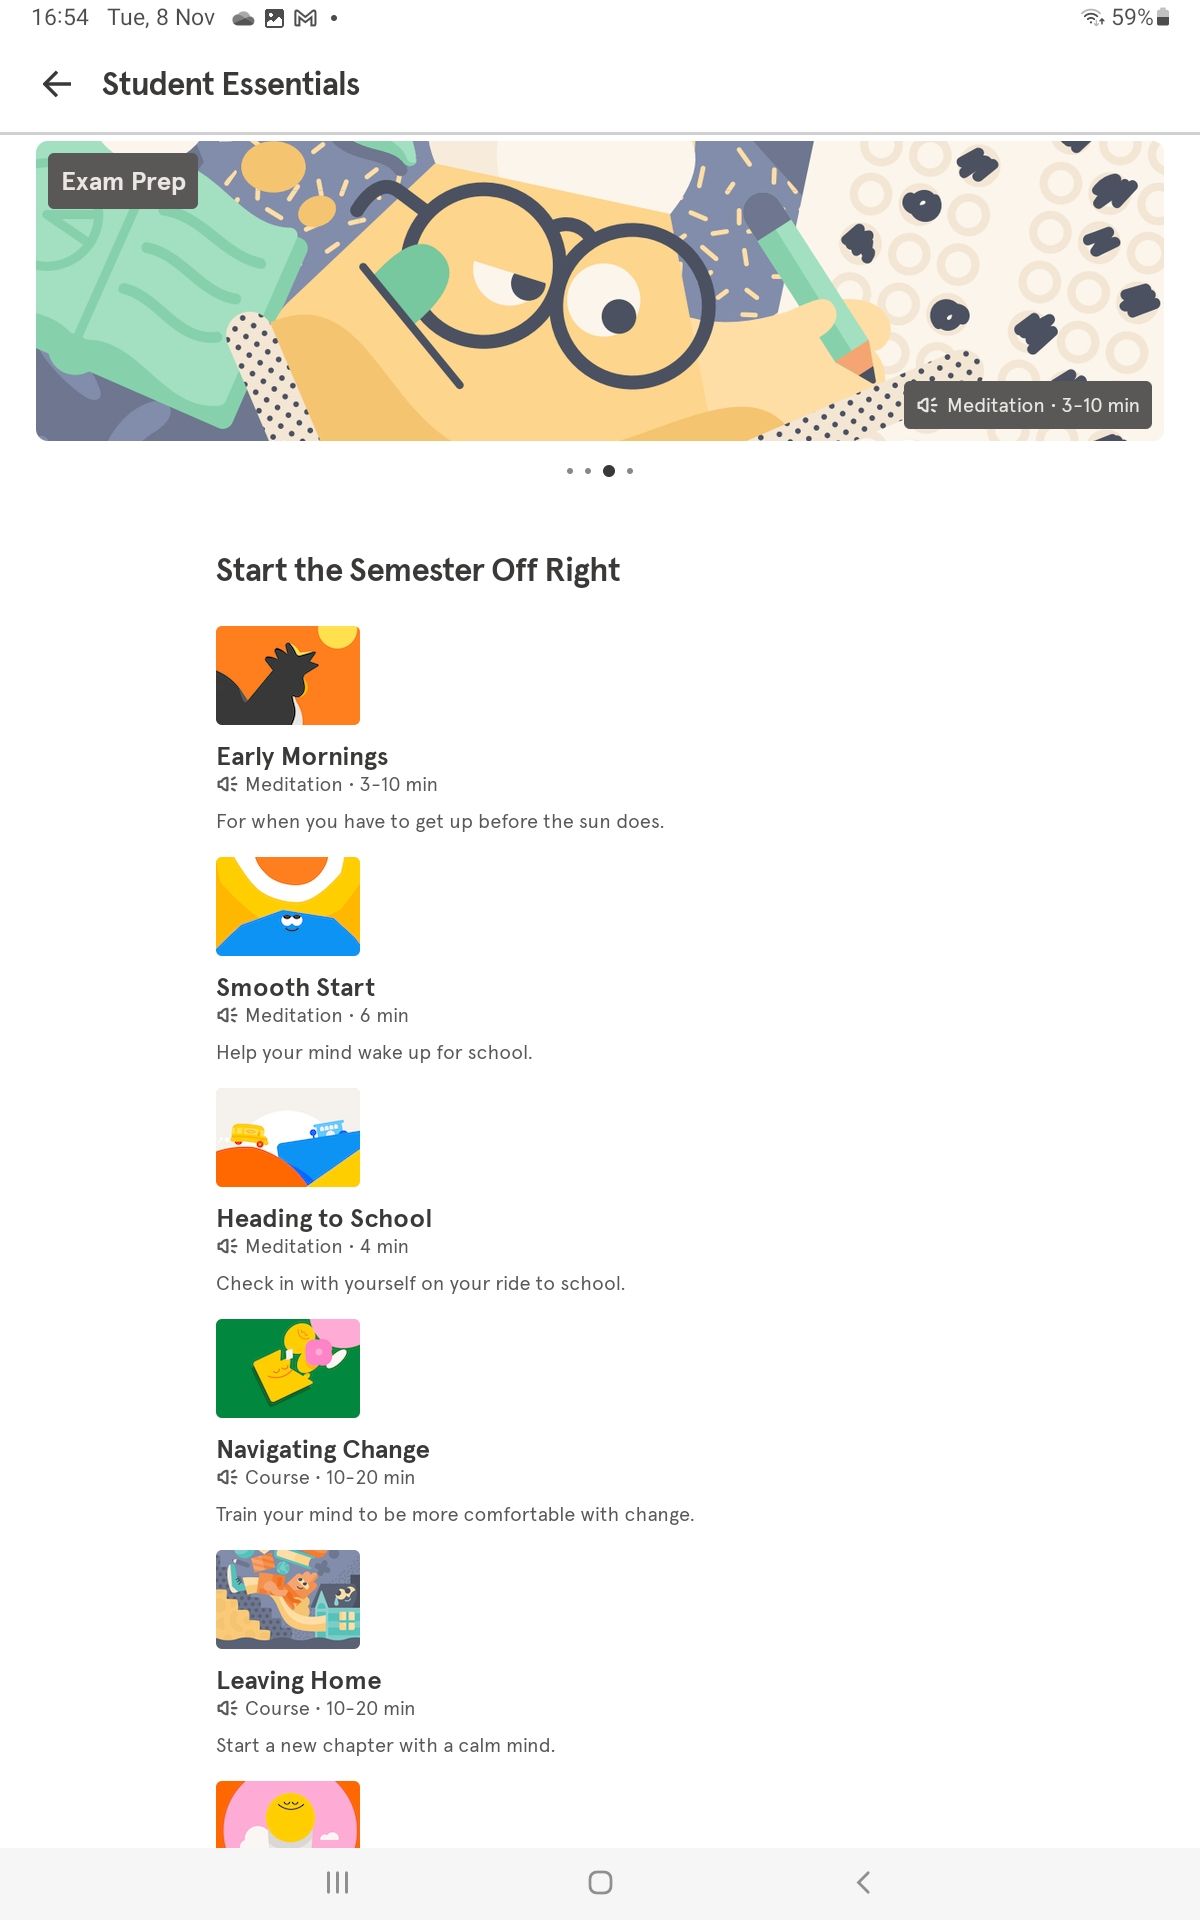 Cuplikan layar aplikasi Headspace yang menampilkan bagian Essentials Student